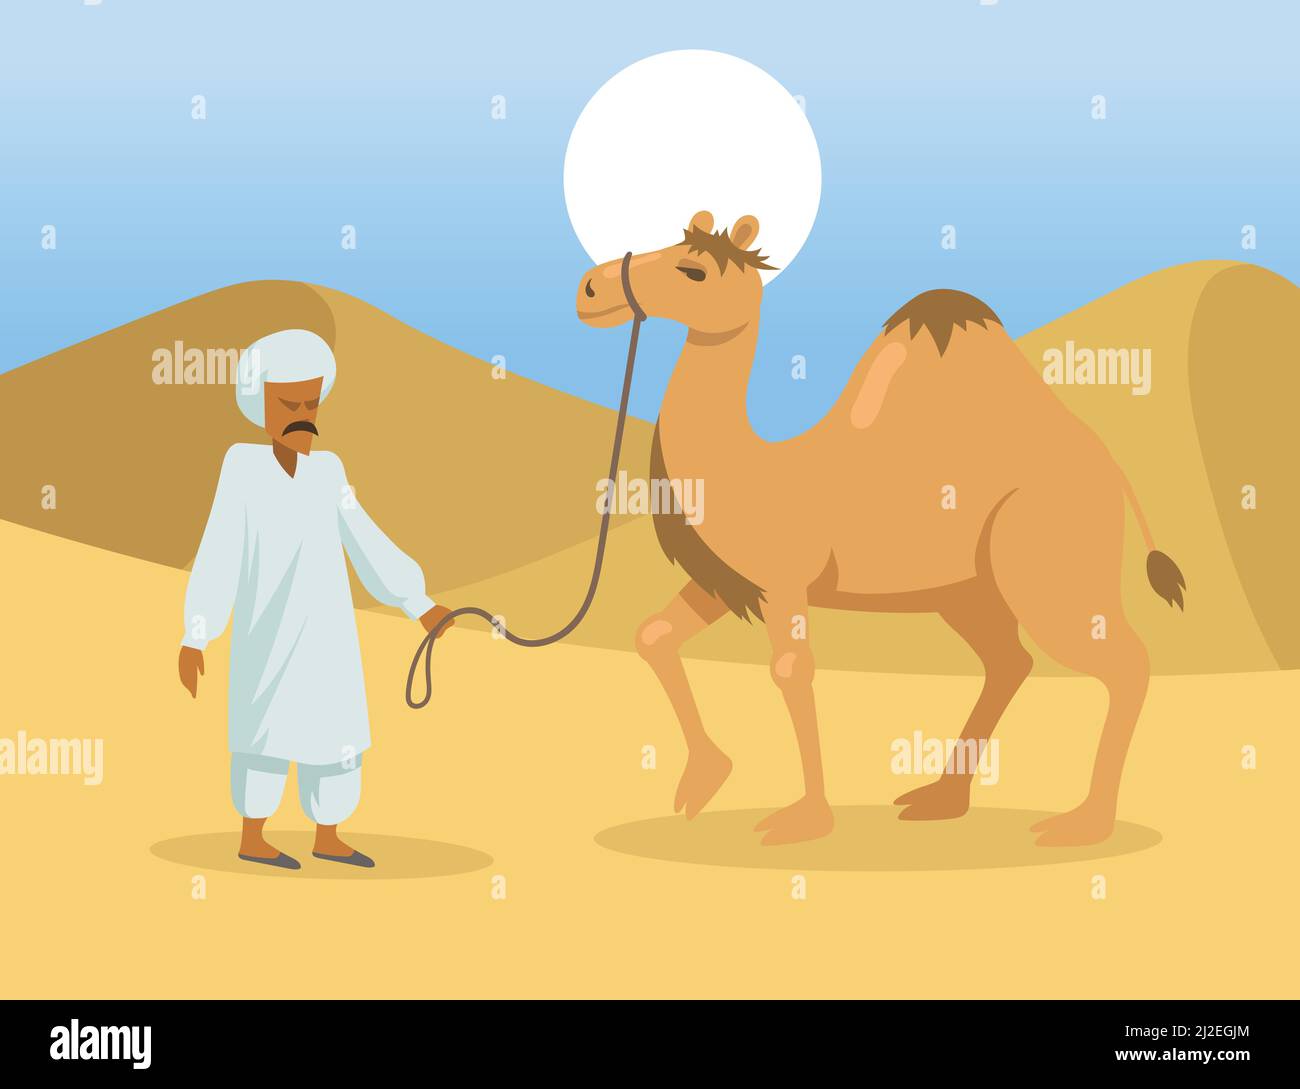 Homme arabe avec un chameau bosse dans le désert. Animal dromadaire sauvage et personnages de dessins animés bédouins dans la nature. Illustration vectorielle plate. Egypte paysage conc Illustration de Vecteur